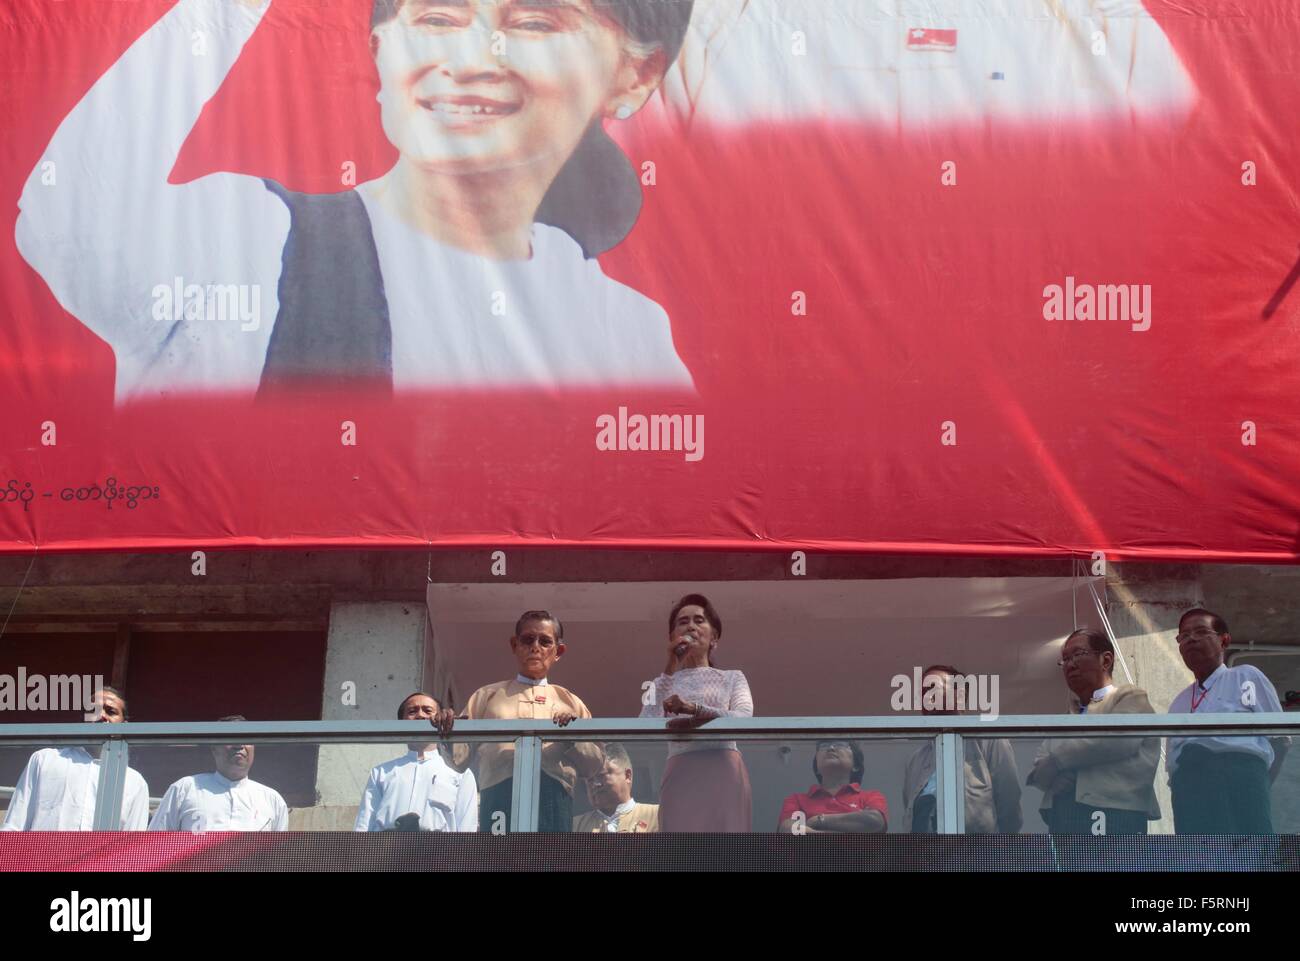 Yangon, Myanmar. 9. November 2015. Demokratie-Symbol Aung San Suu Kyi hält eine Rede an Unterstützer am Sitz der Nationalliga für Demokratie-Partei in Yangon, Myanmar, 9. November 2015. Suu Kyi sagte "Du weißt schon die Ergebnisse" Anspielungen auf einen Erdrutschsieg bei den historischen Wahlen in Myanmar. Bildnachweis: Arthur Jones Dionio/Alamy Live-Nachrichten Stockfoto